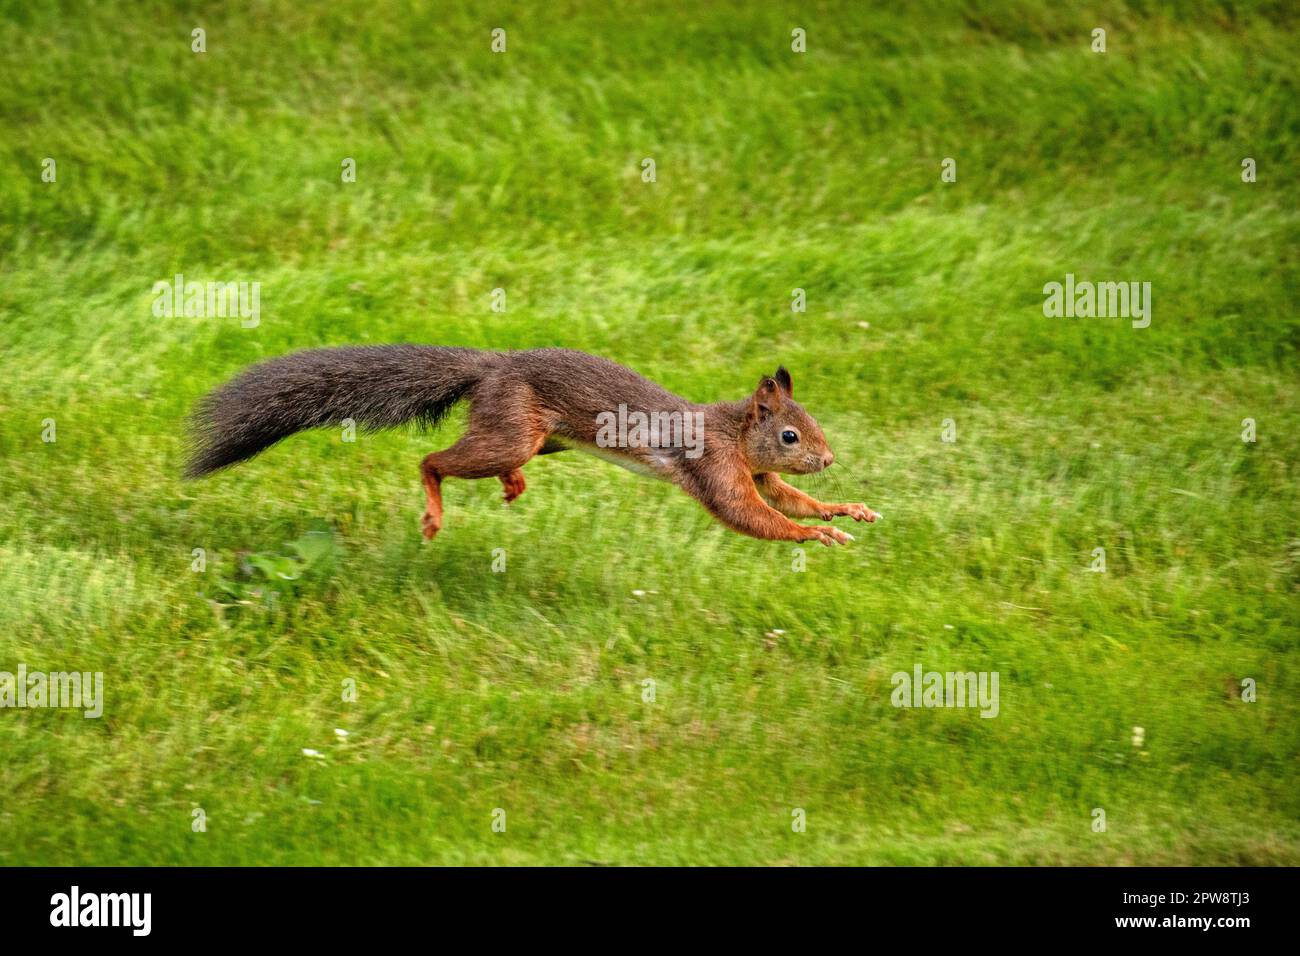 Paesi Bassi, Õs-Graveland. Scoiattolo rosso o scoiattolo rosso eurasiatico (Sciurus vulgaris). Foto Stock